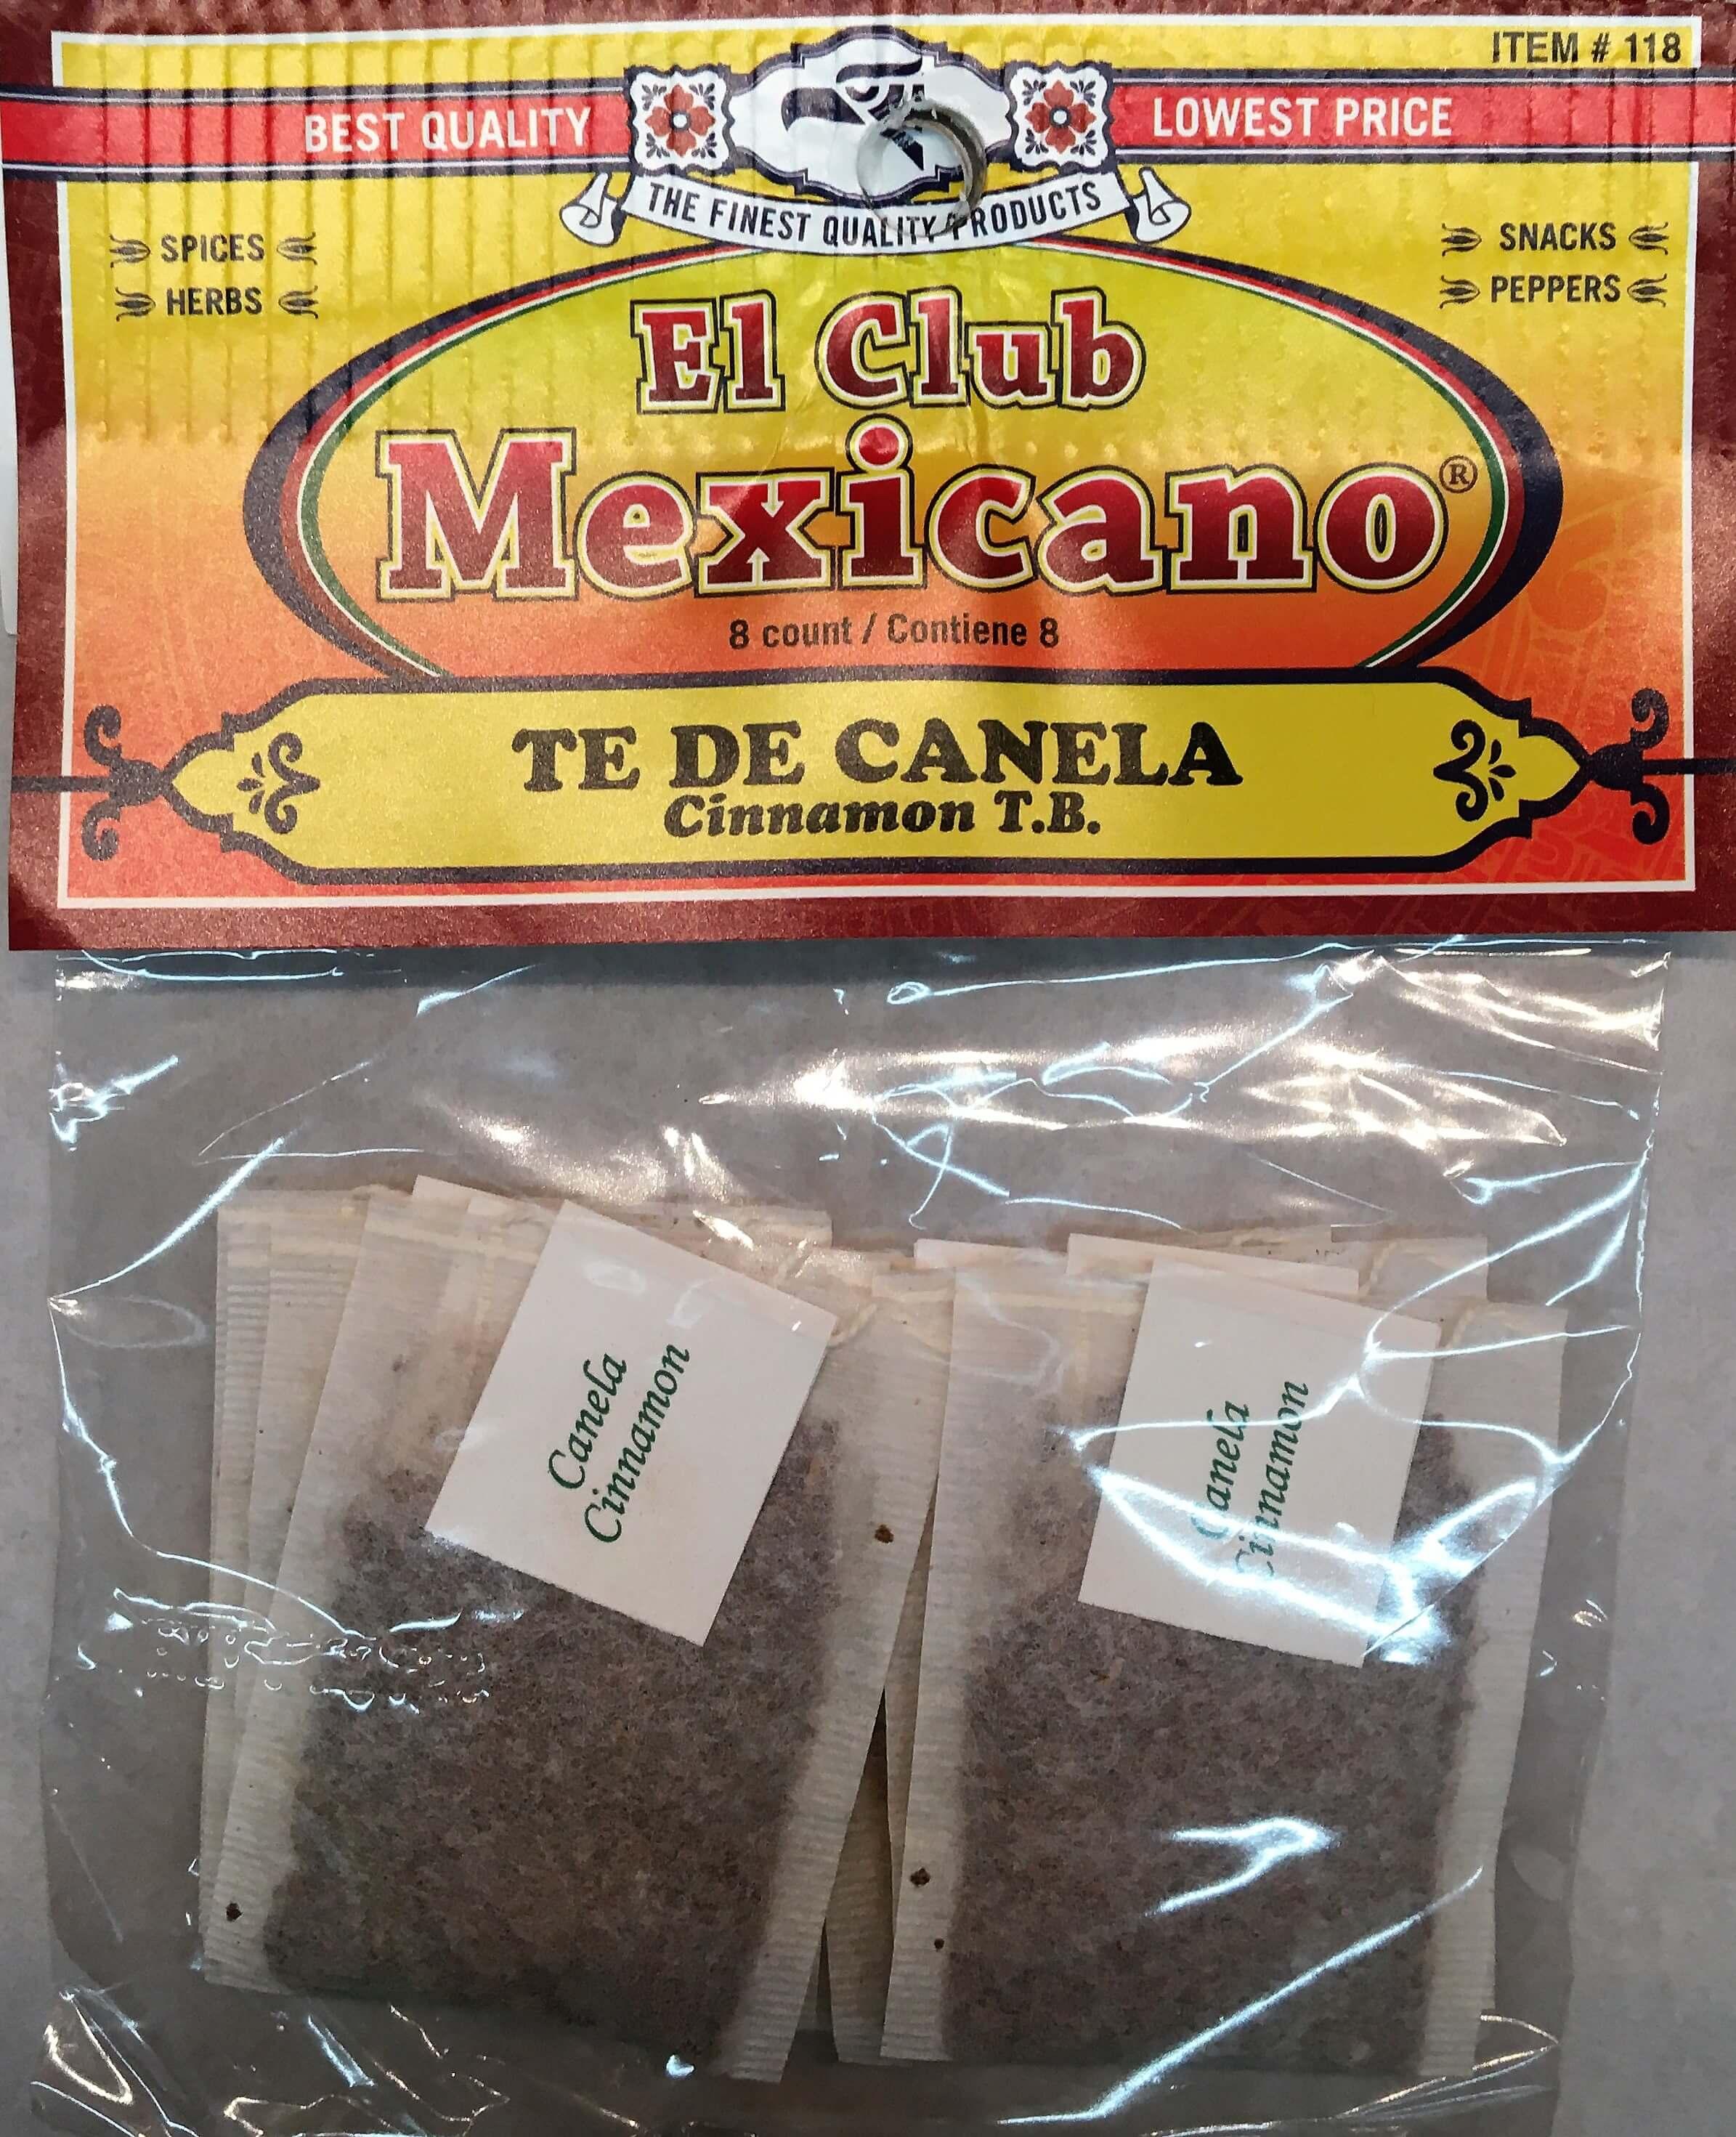 El Club Mexicano - Cinnamon T.B.8 count.